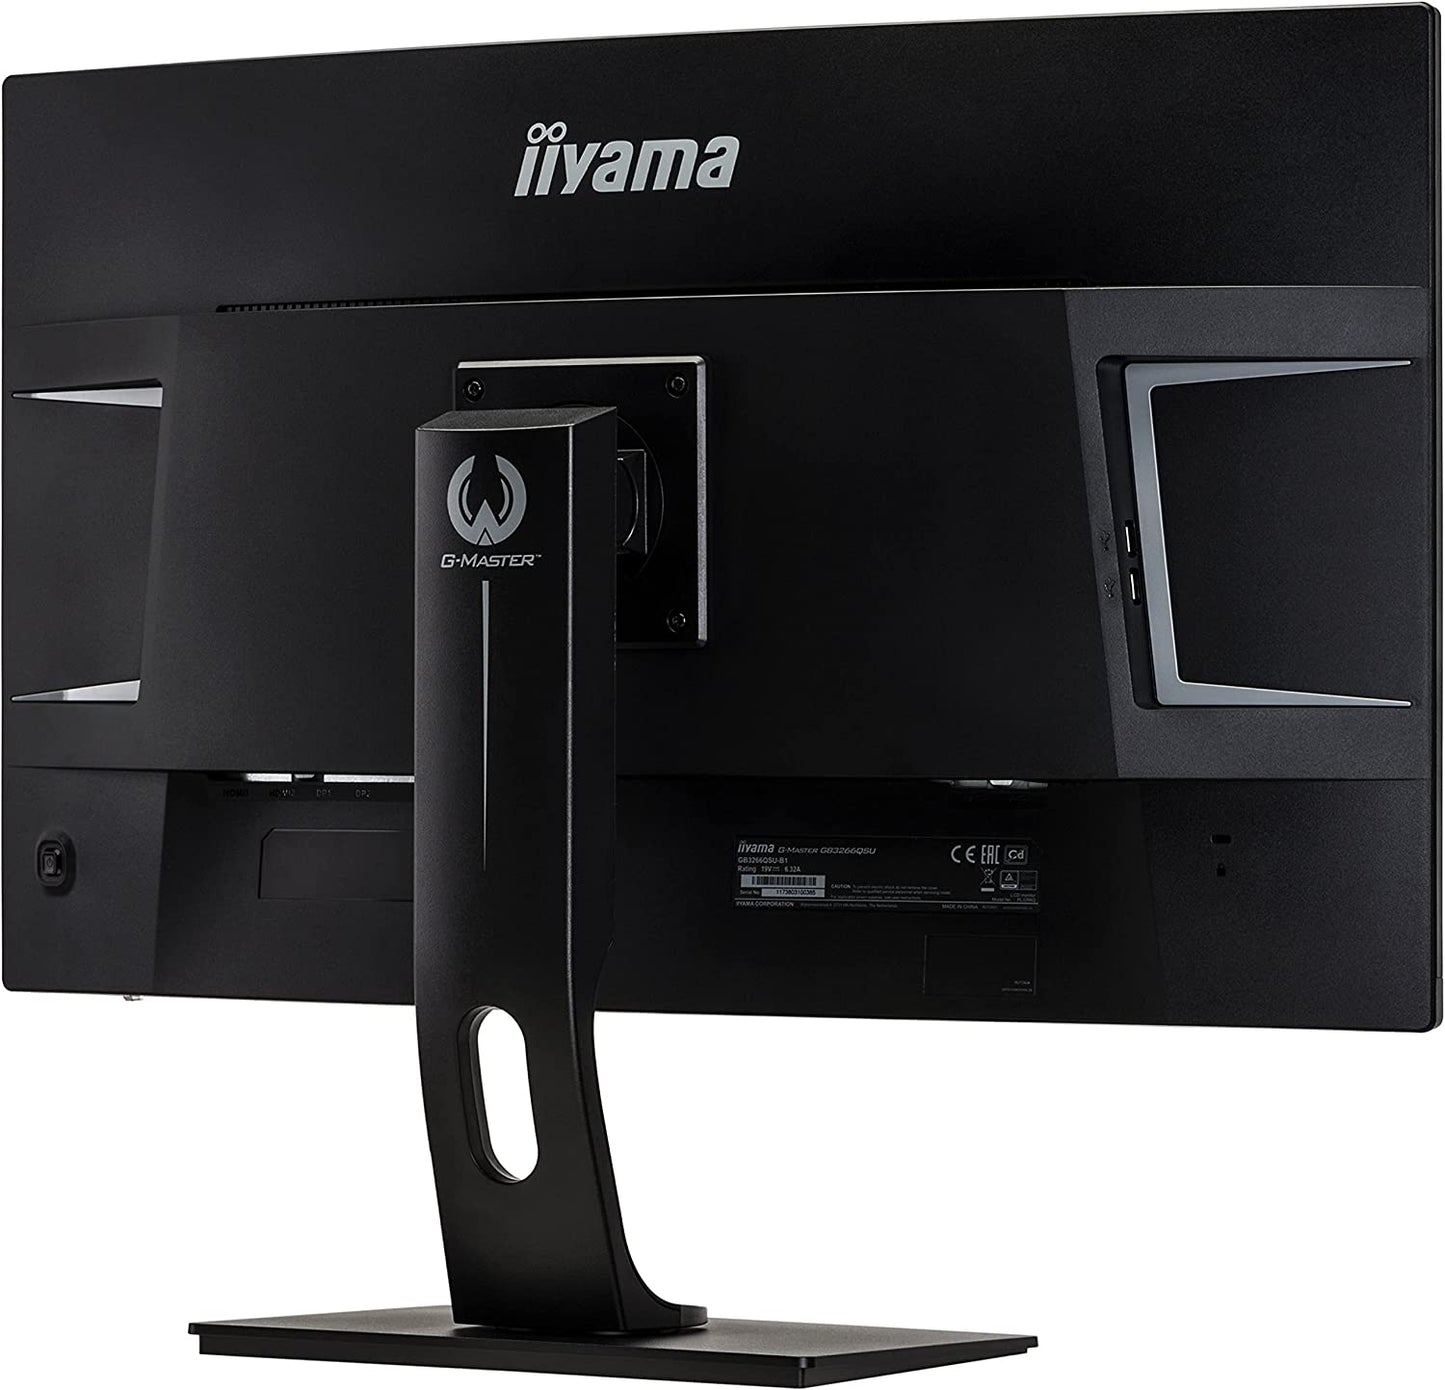 IIyama G-Master Red Eagle Curved Gaming Monitor 32"